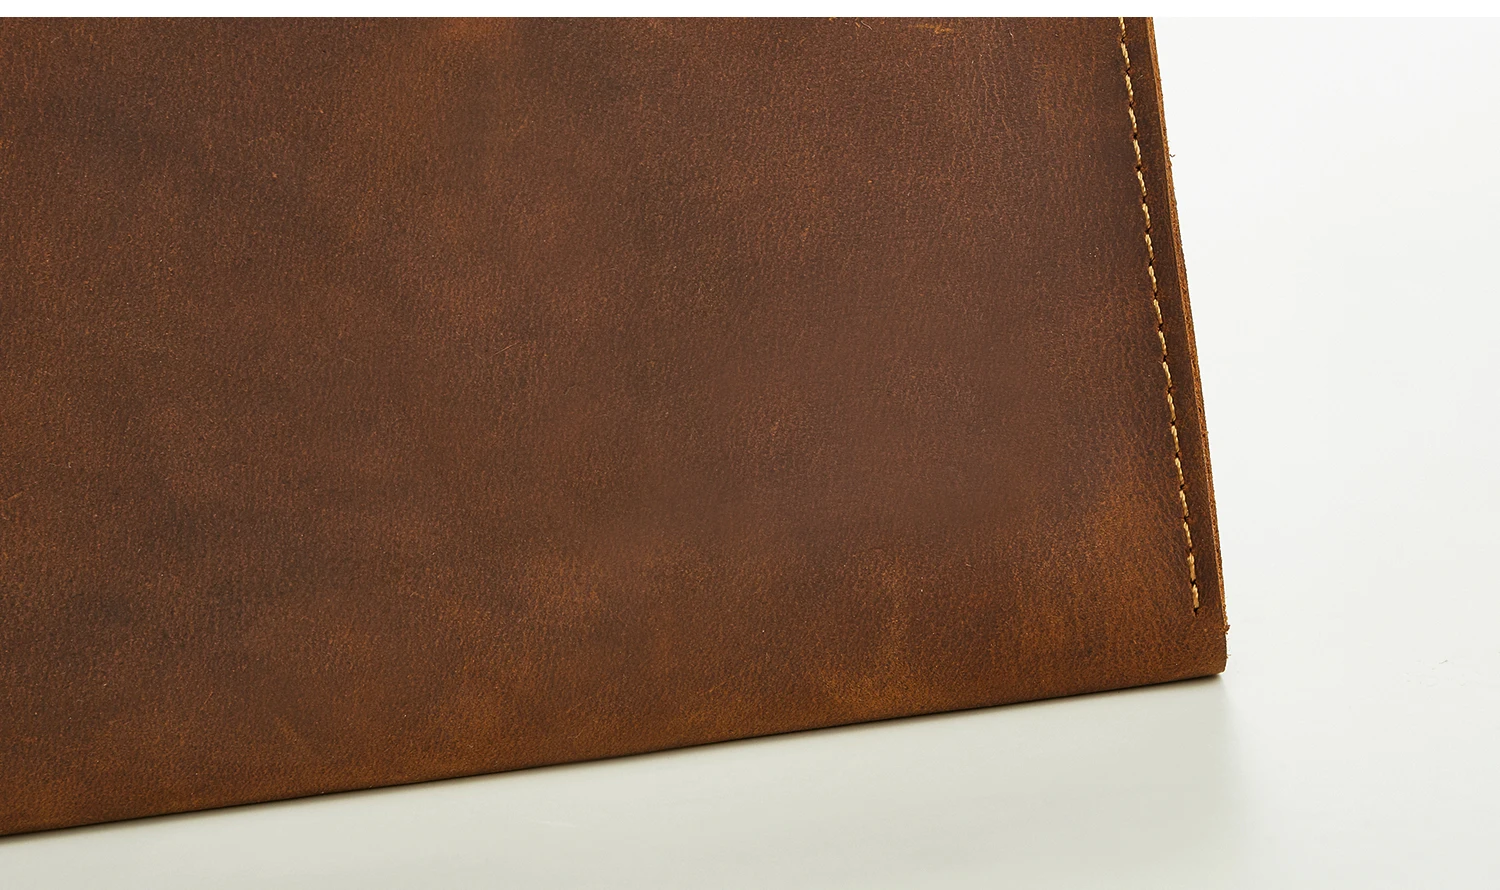 Crazy Horse ручной портфель из натуральной кожи для A4 файл пакет Macbook портфель для IPAD черный и коричневый